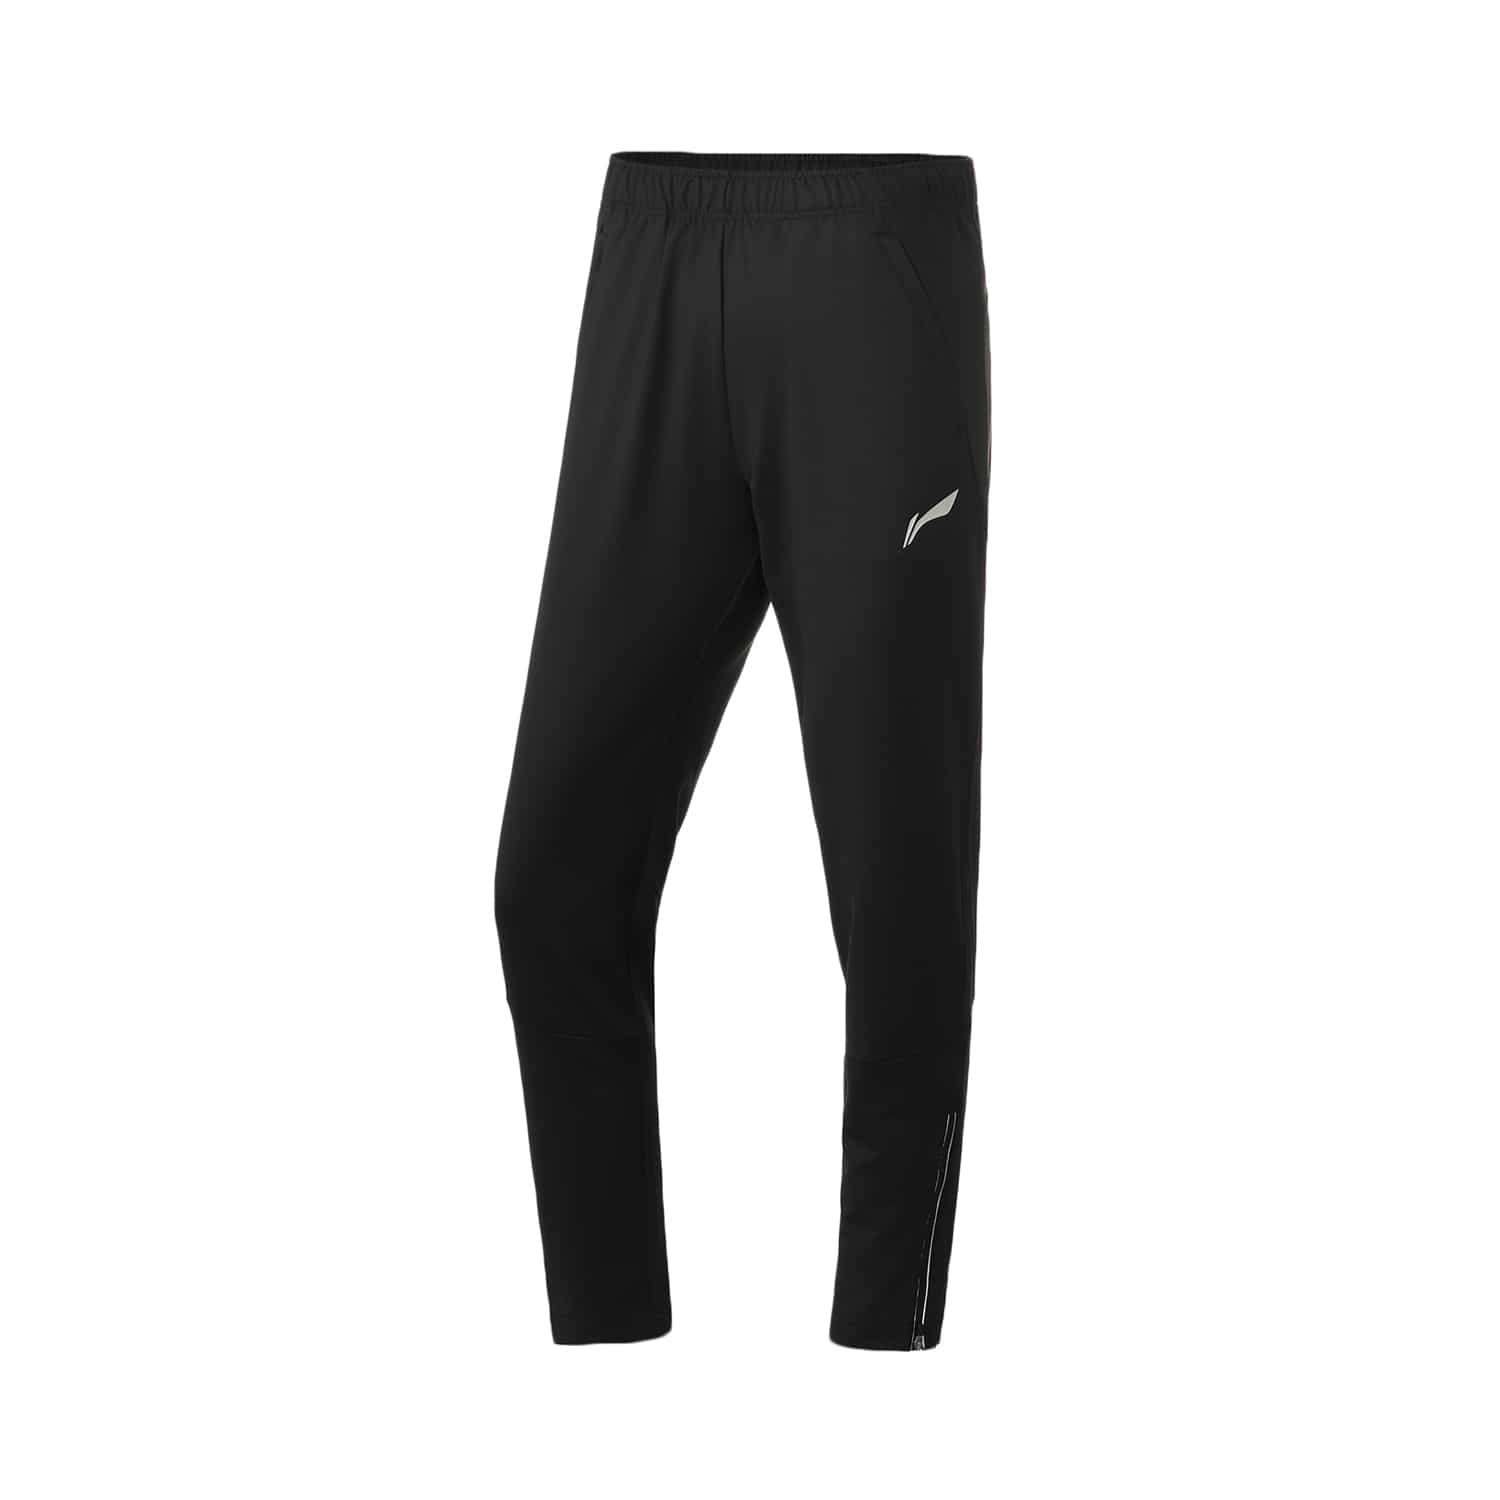 跑步系列女子運動長褲 - 新標準黑